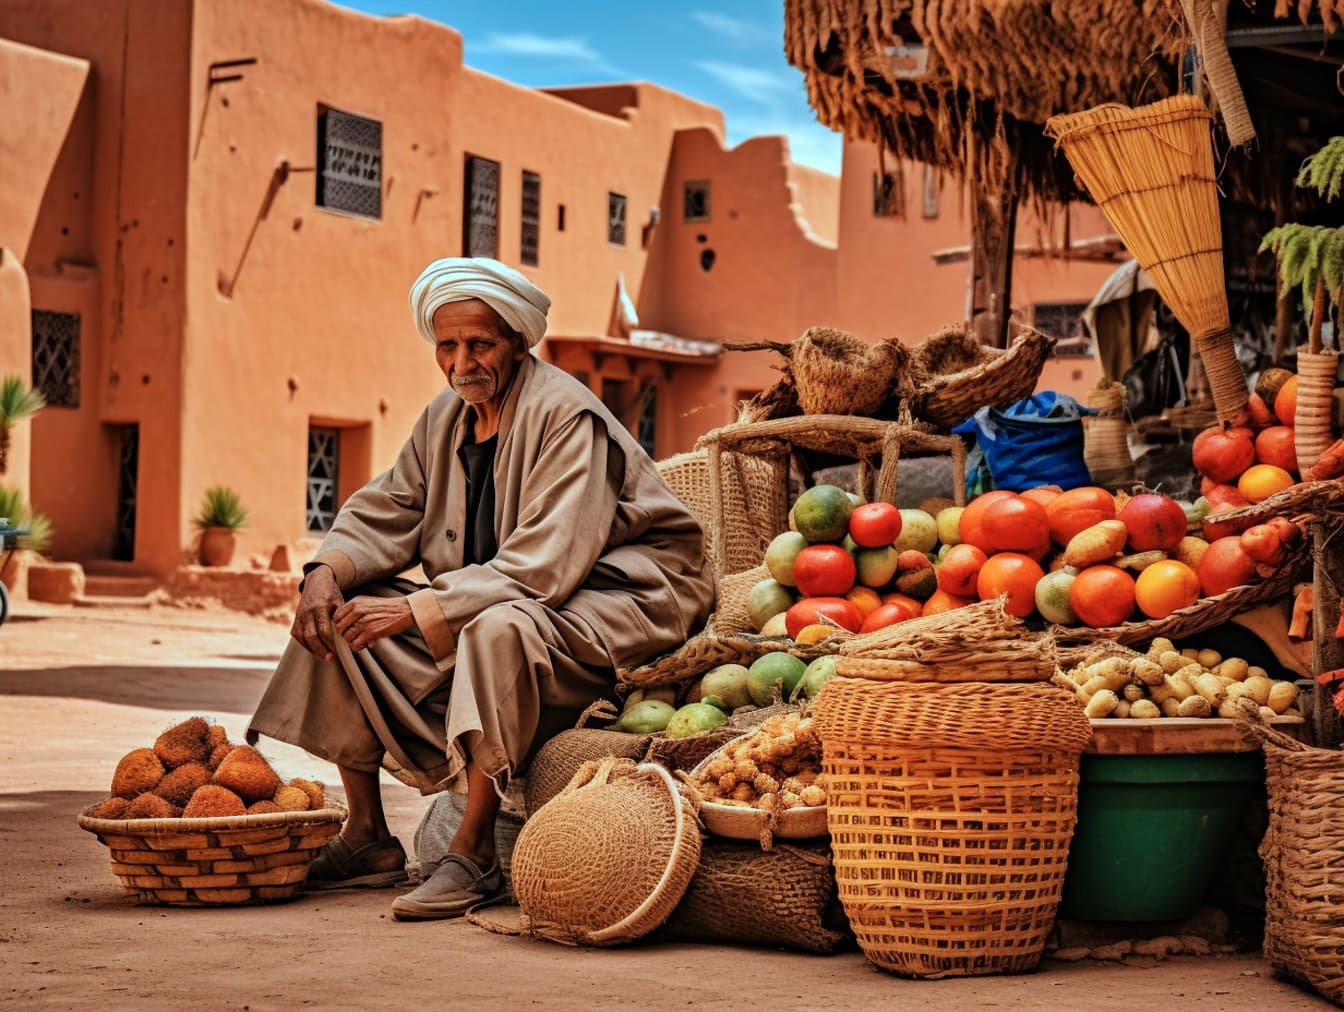 Bătrân în haine tradiționale arabe așezat lângă o grămadă de fructe într-o piață stradală din partea veche a orașului Maroc